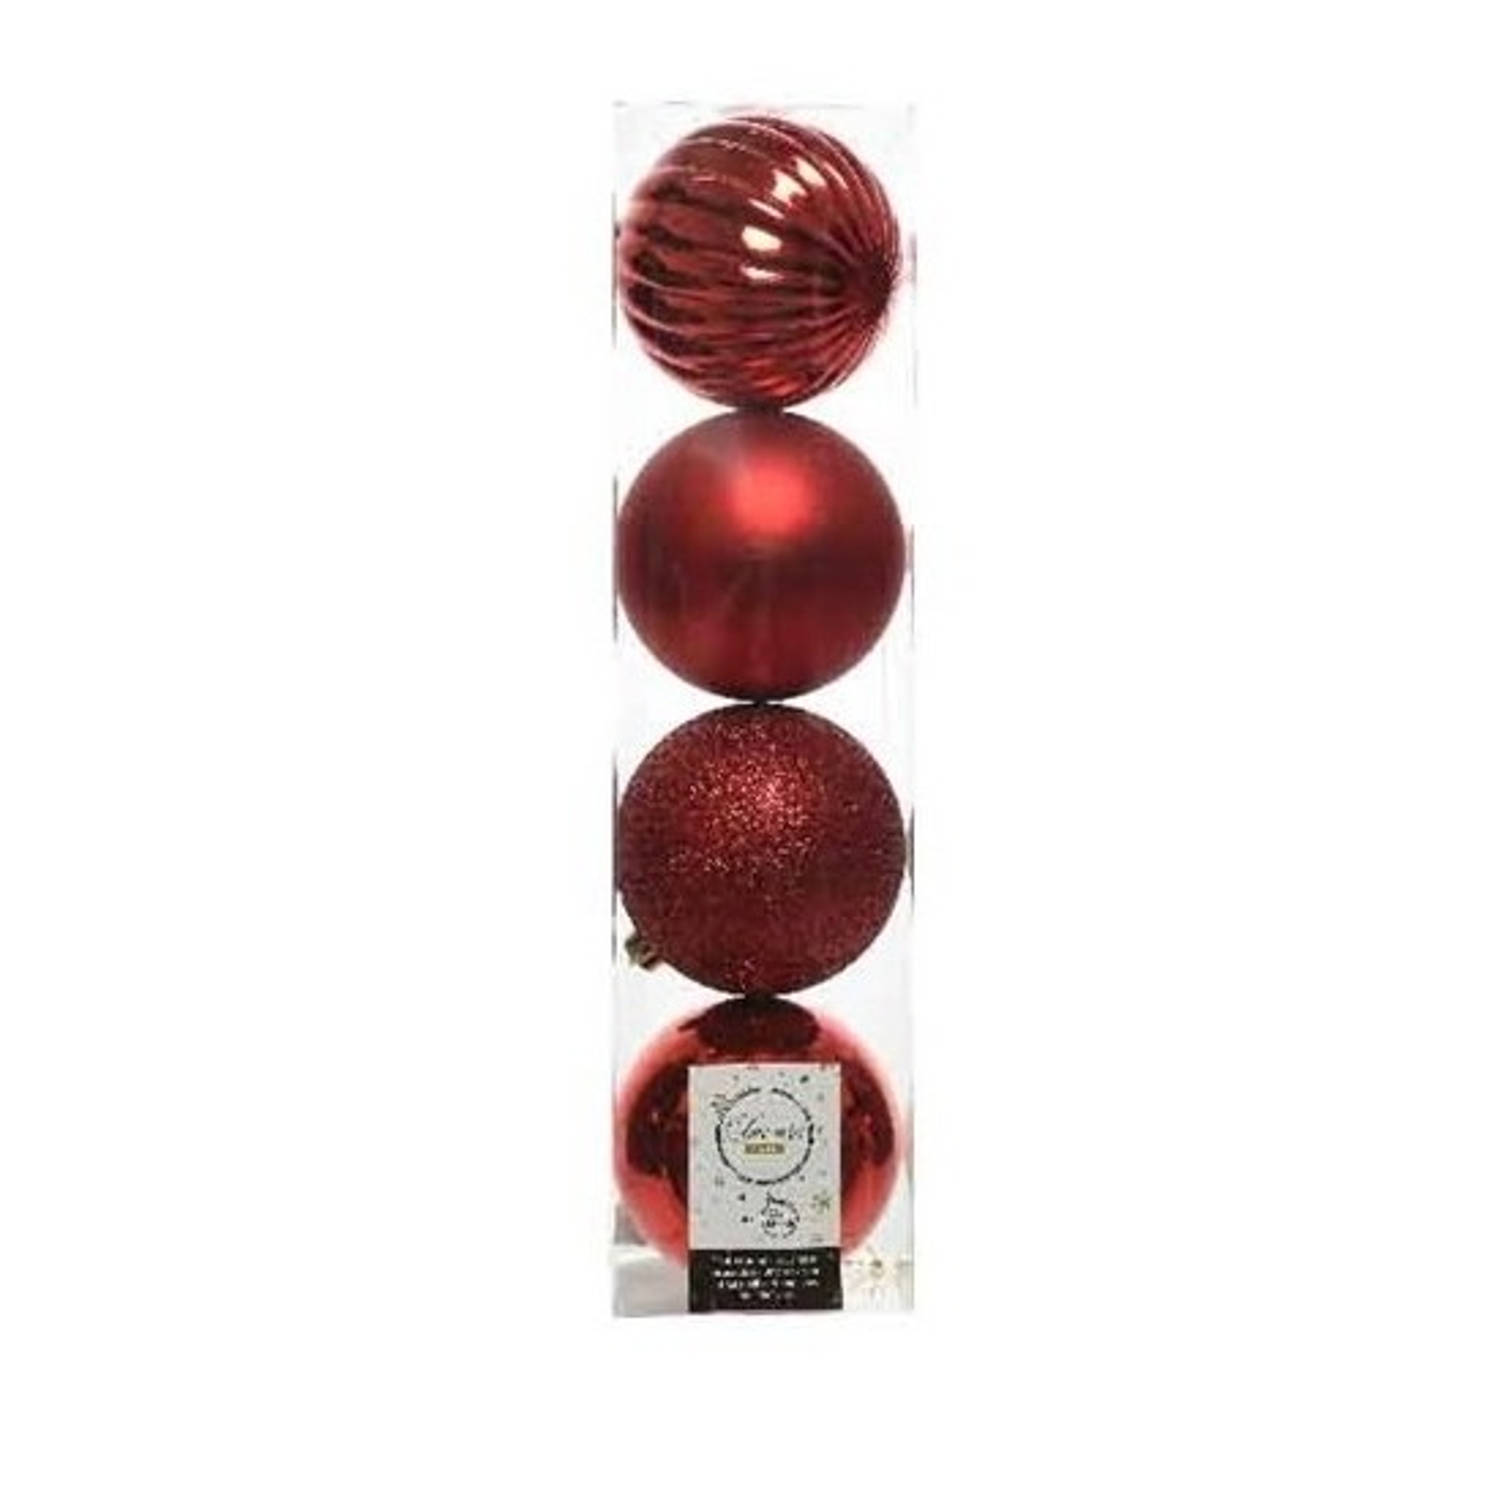 4x Kunststof kerstballen mix kerstrood 10 cm kerstboom versiering/decoratie - Kerstbal